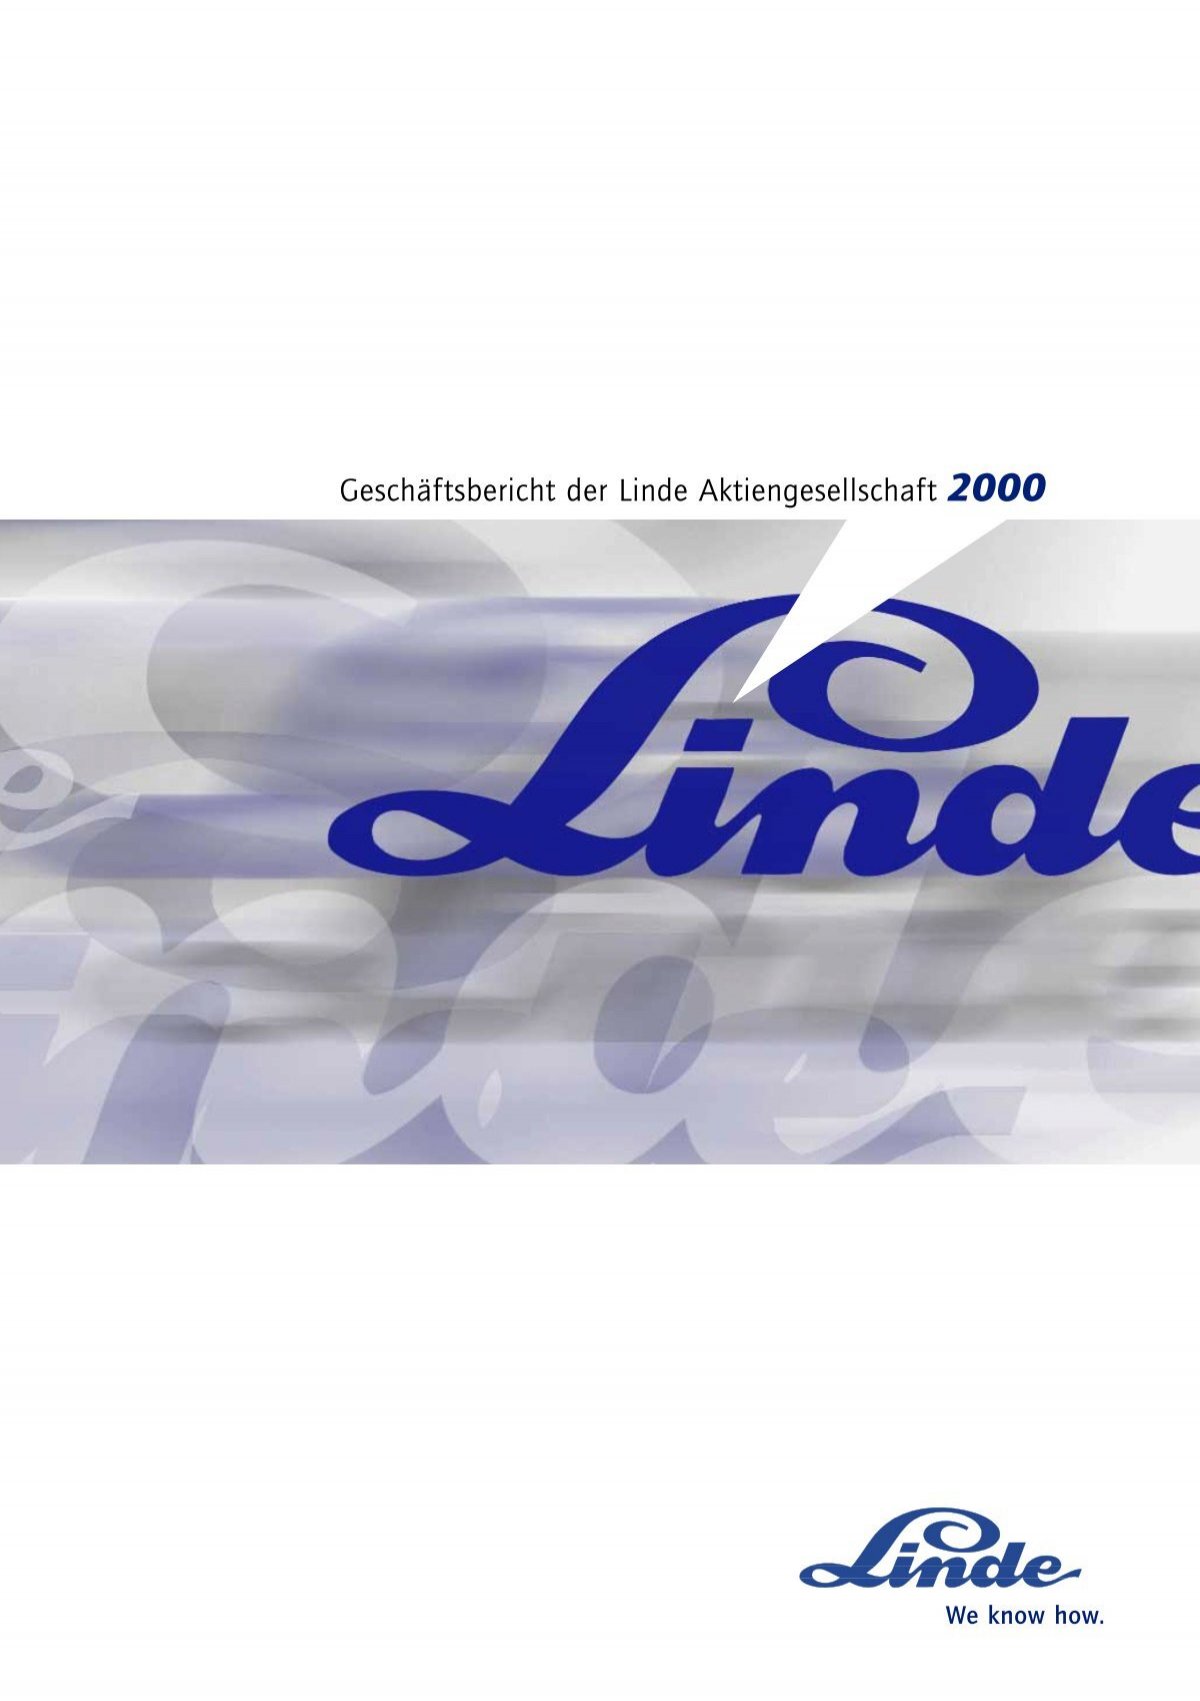 Gescha Ftsbericht Der Linde Aktiengesellschaft 00 The Linde Group